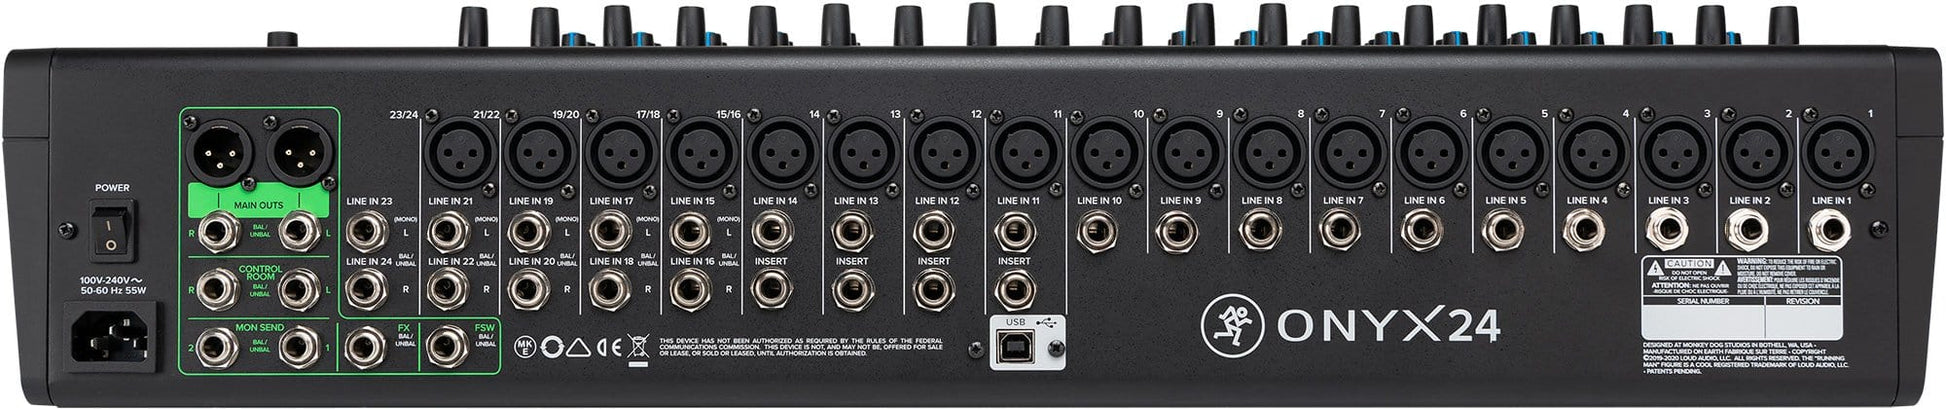 Mackie Onyx24 24-Ch Analog Mixer w Multi-Track USB - ProSound and Stage Lighting